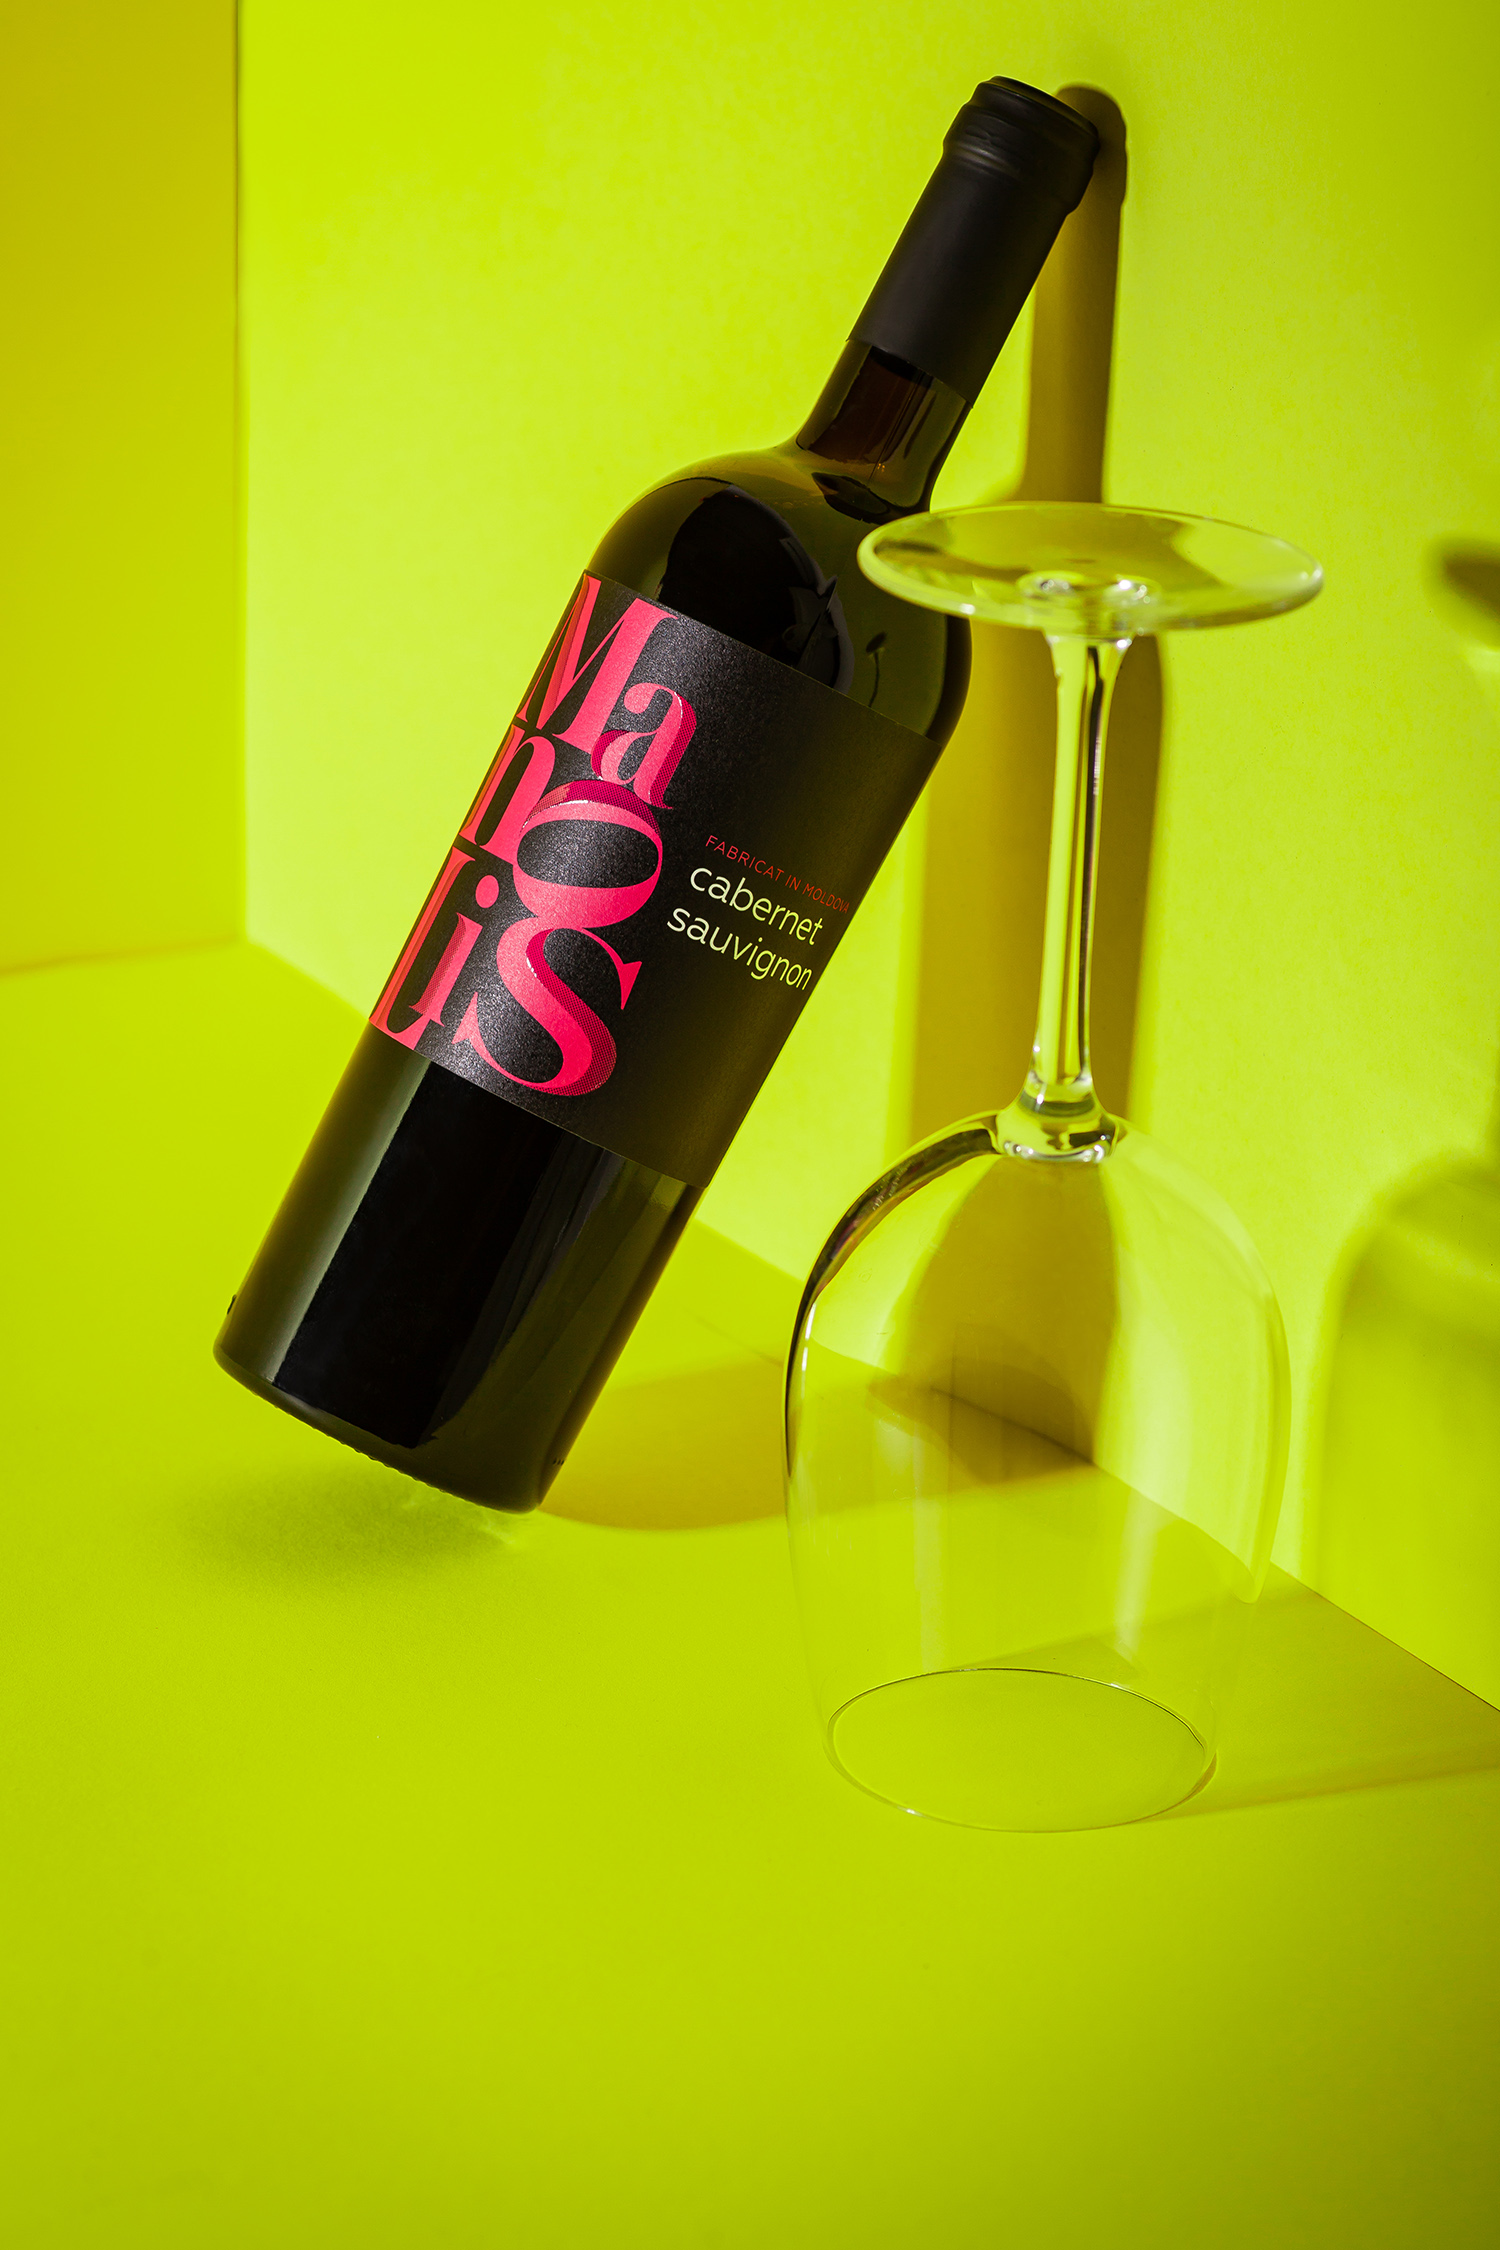 时尚的字体排版 Manolis葡萄酒包装设计